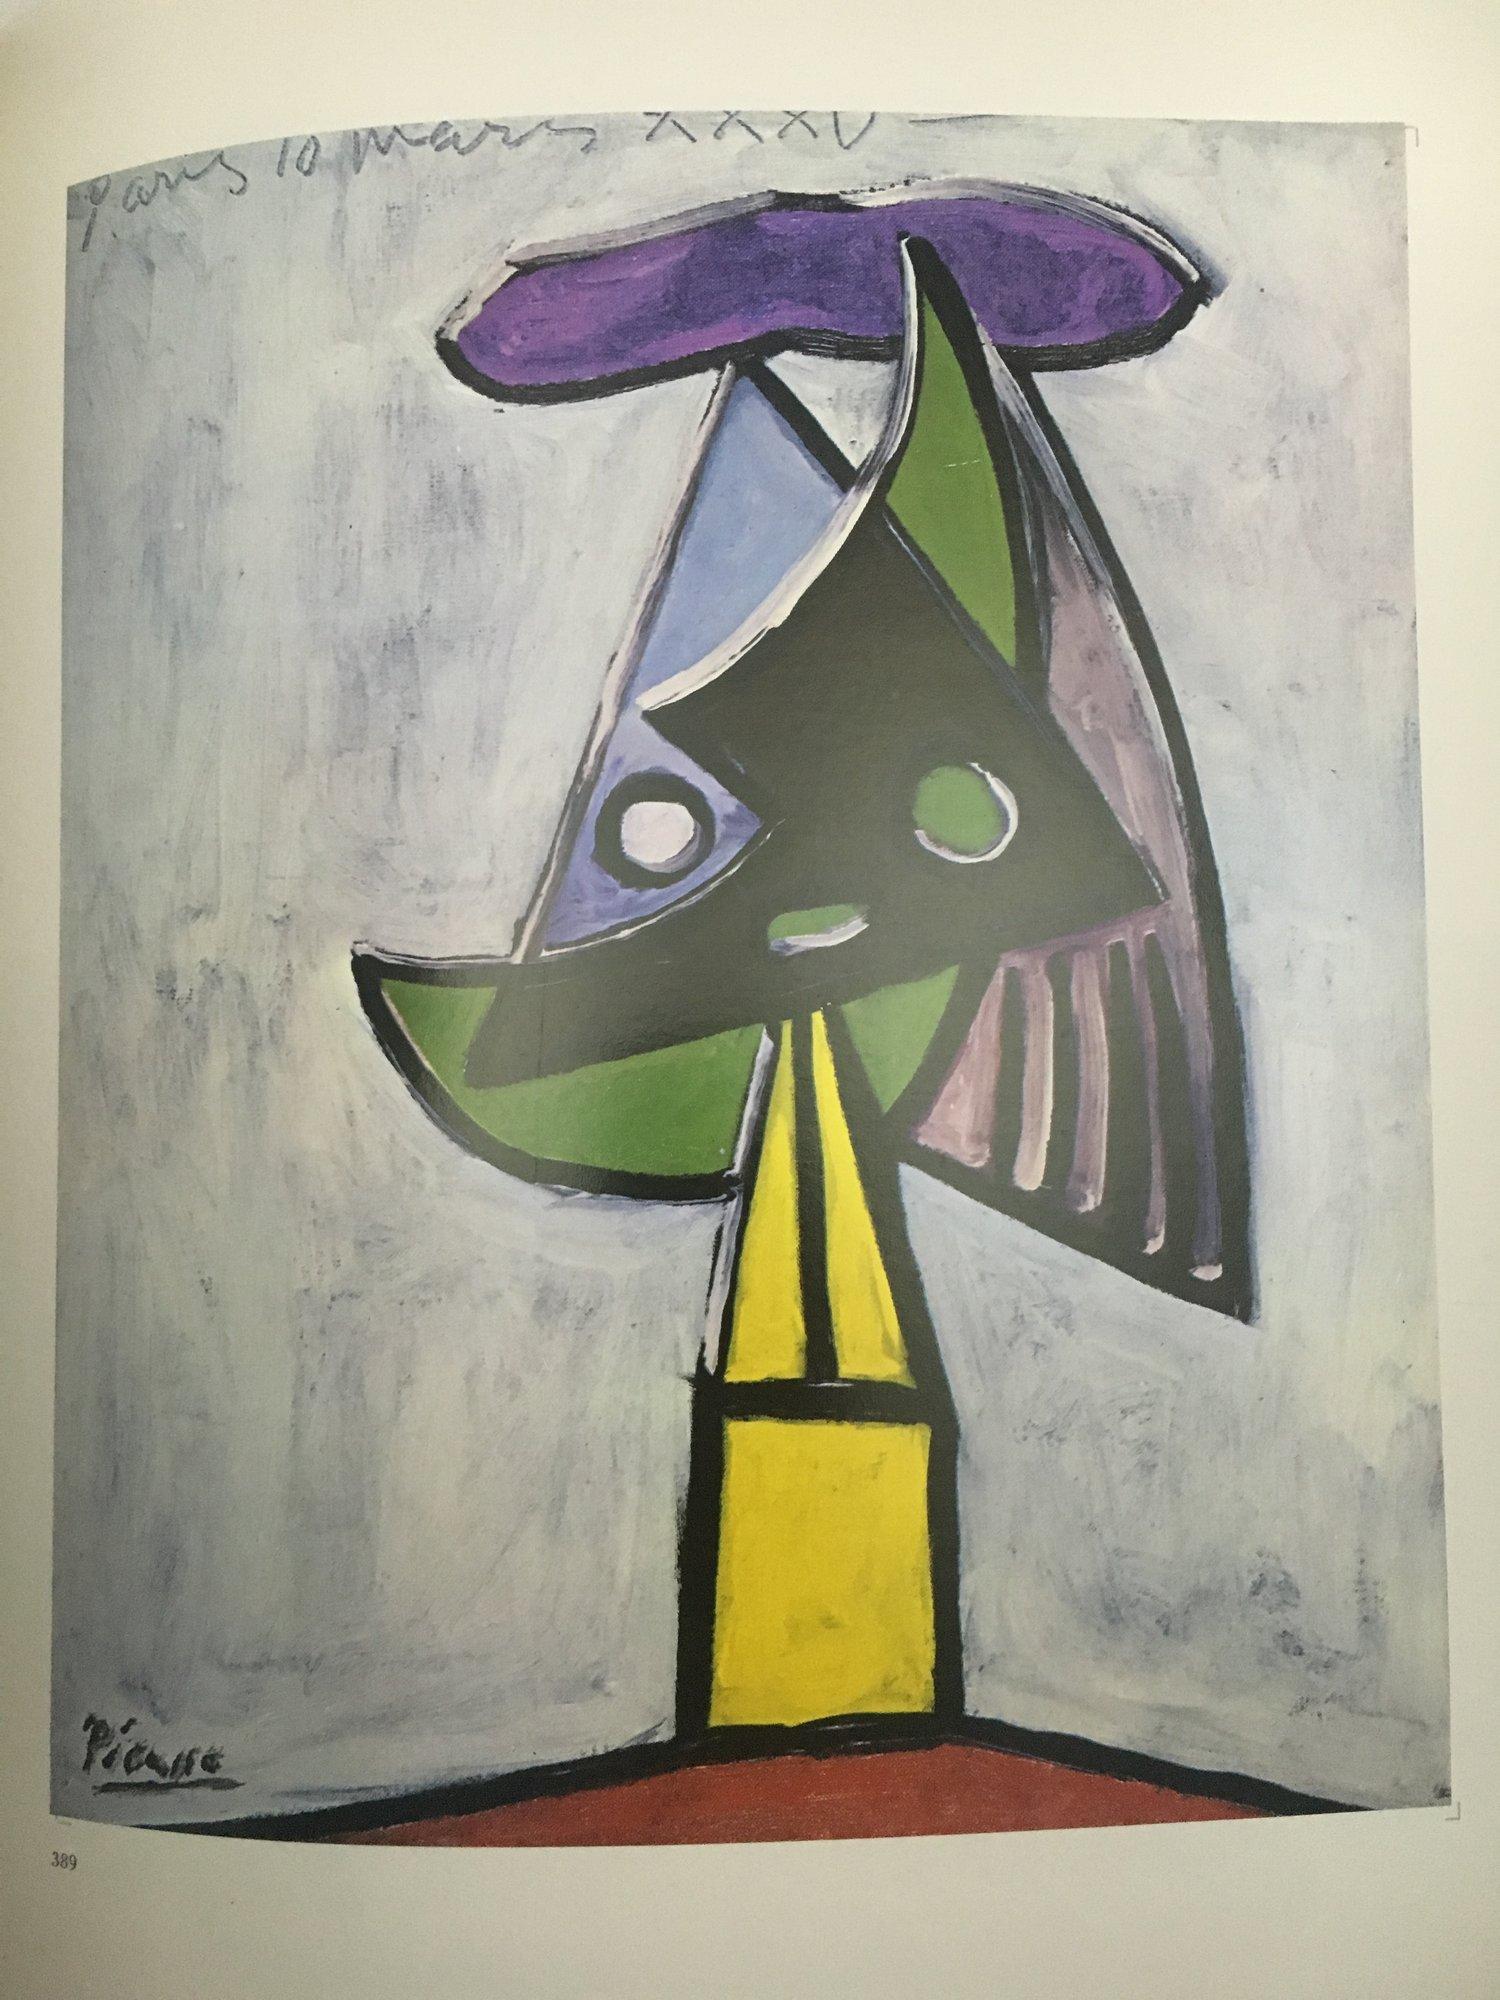 Trueing 1. Auflage, Editions Cercle D'Art Paris 1967
Französische Sprache

Douglas Cooper untersucht die Rolle, die das Theaterdesign in Picassos Leben spielte, und stützt sich dabei auf Archivmaterial und Analysen seiner Gemälde. Das Buch bietet